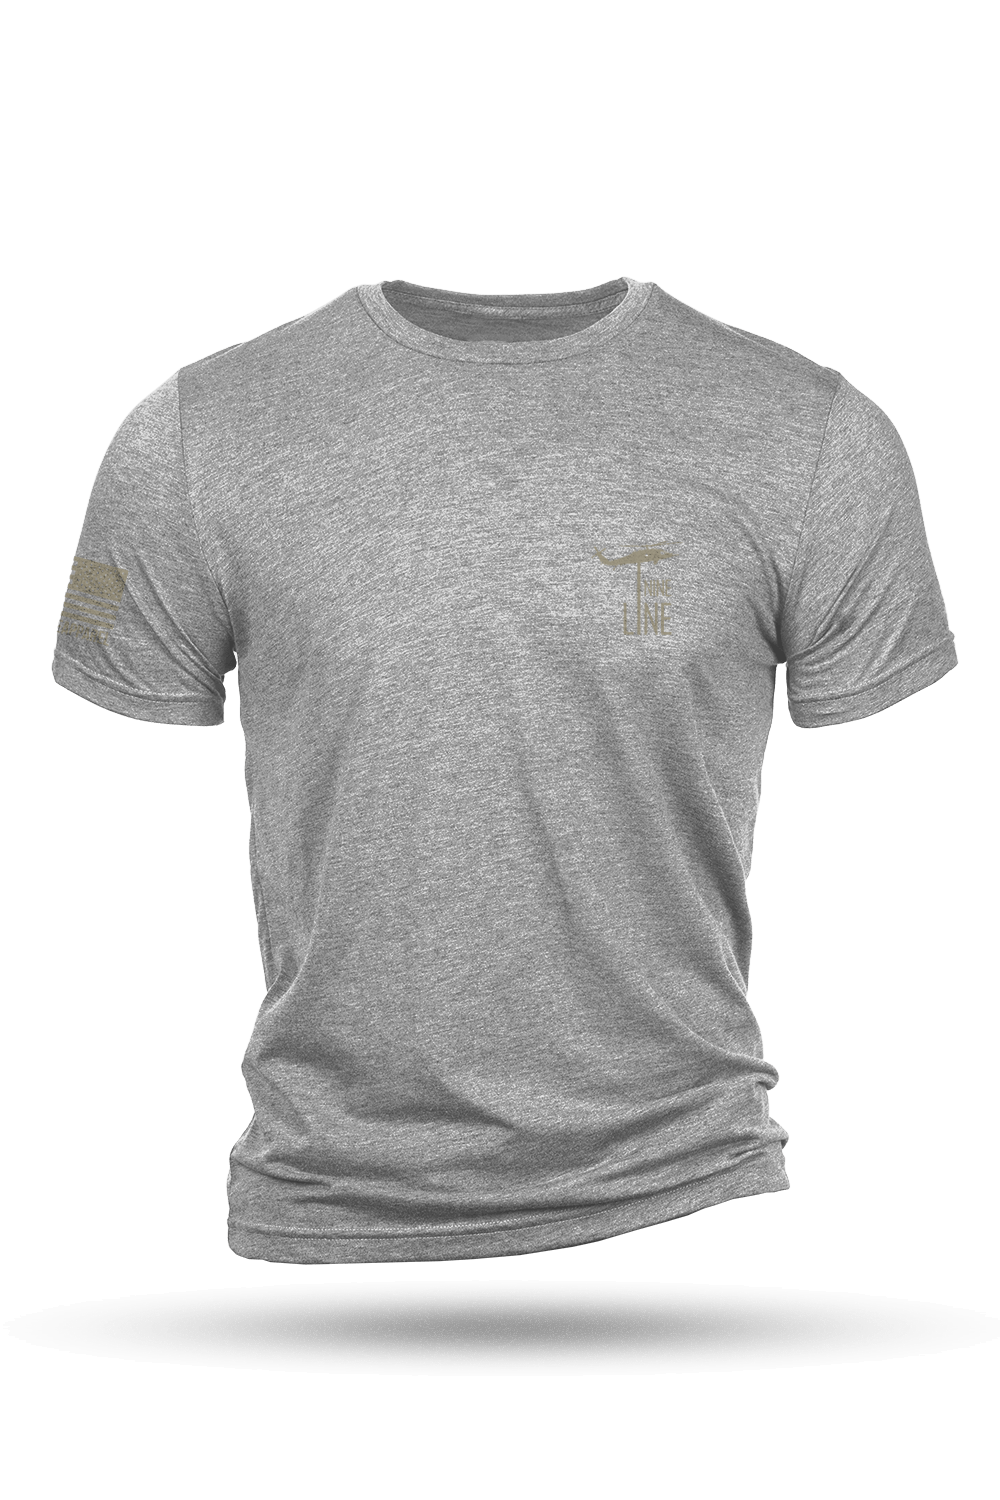 Tri-Blend T-Shirt - Valhalla - Nine Line Apparel